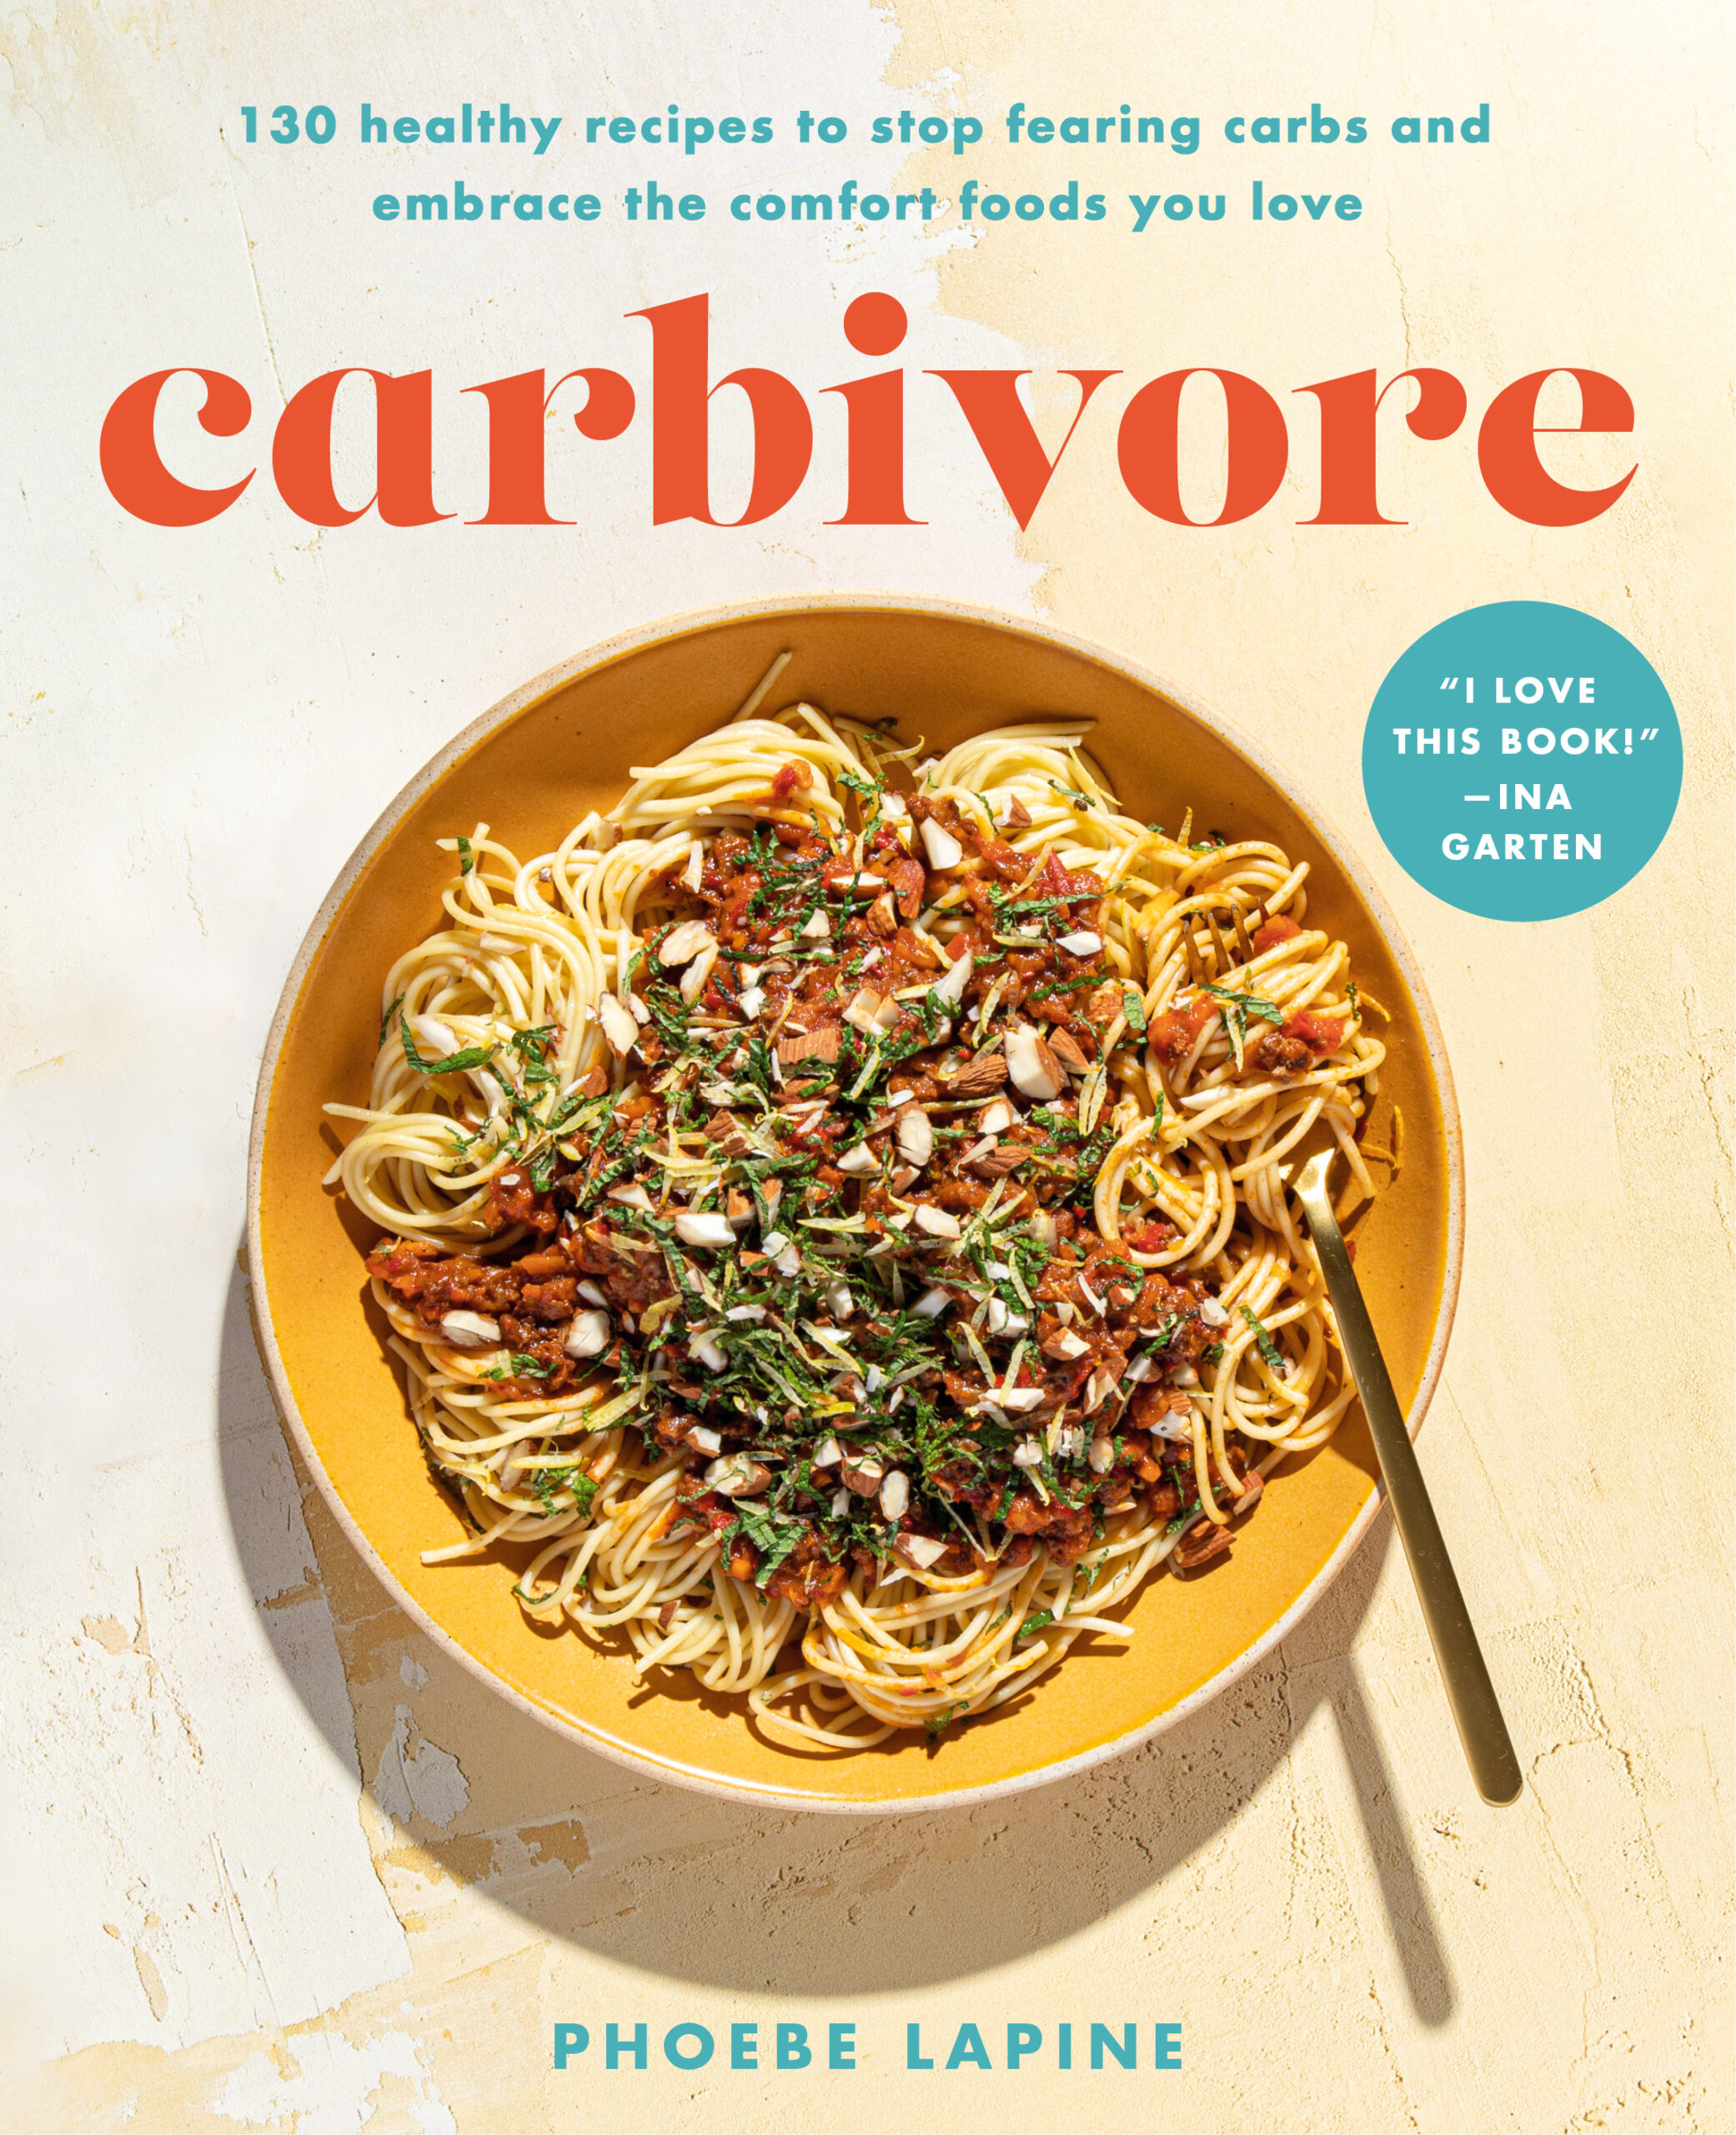 carbivore cookbook cover